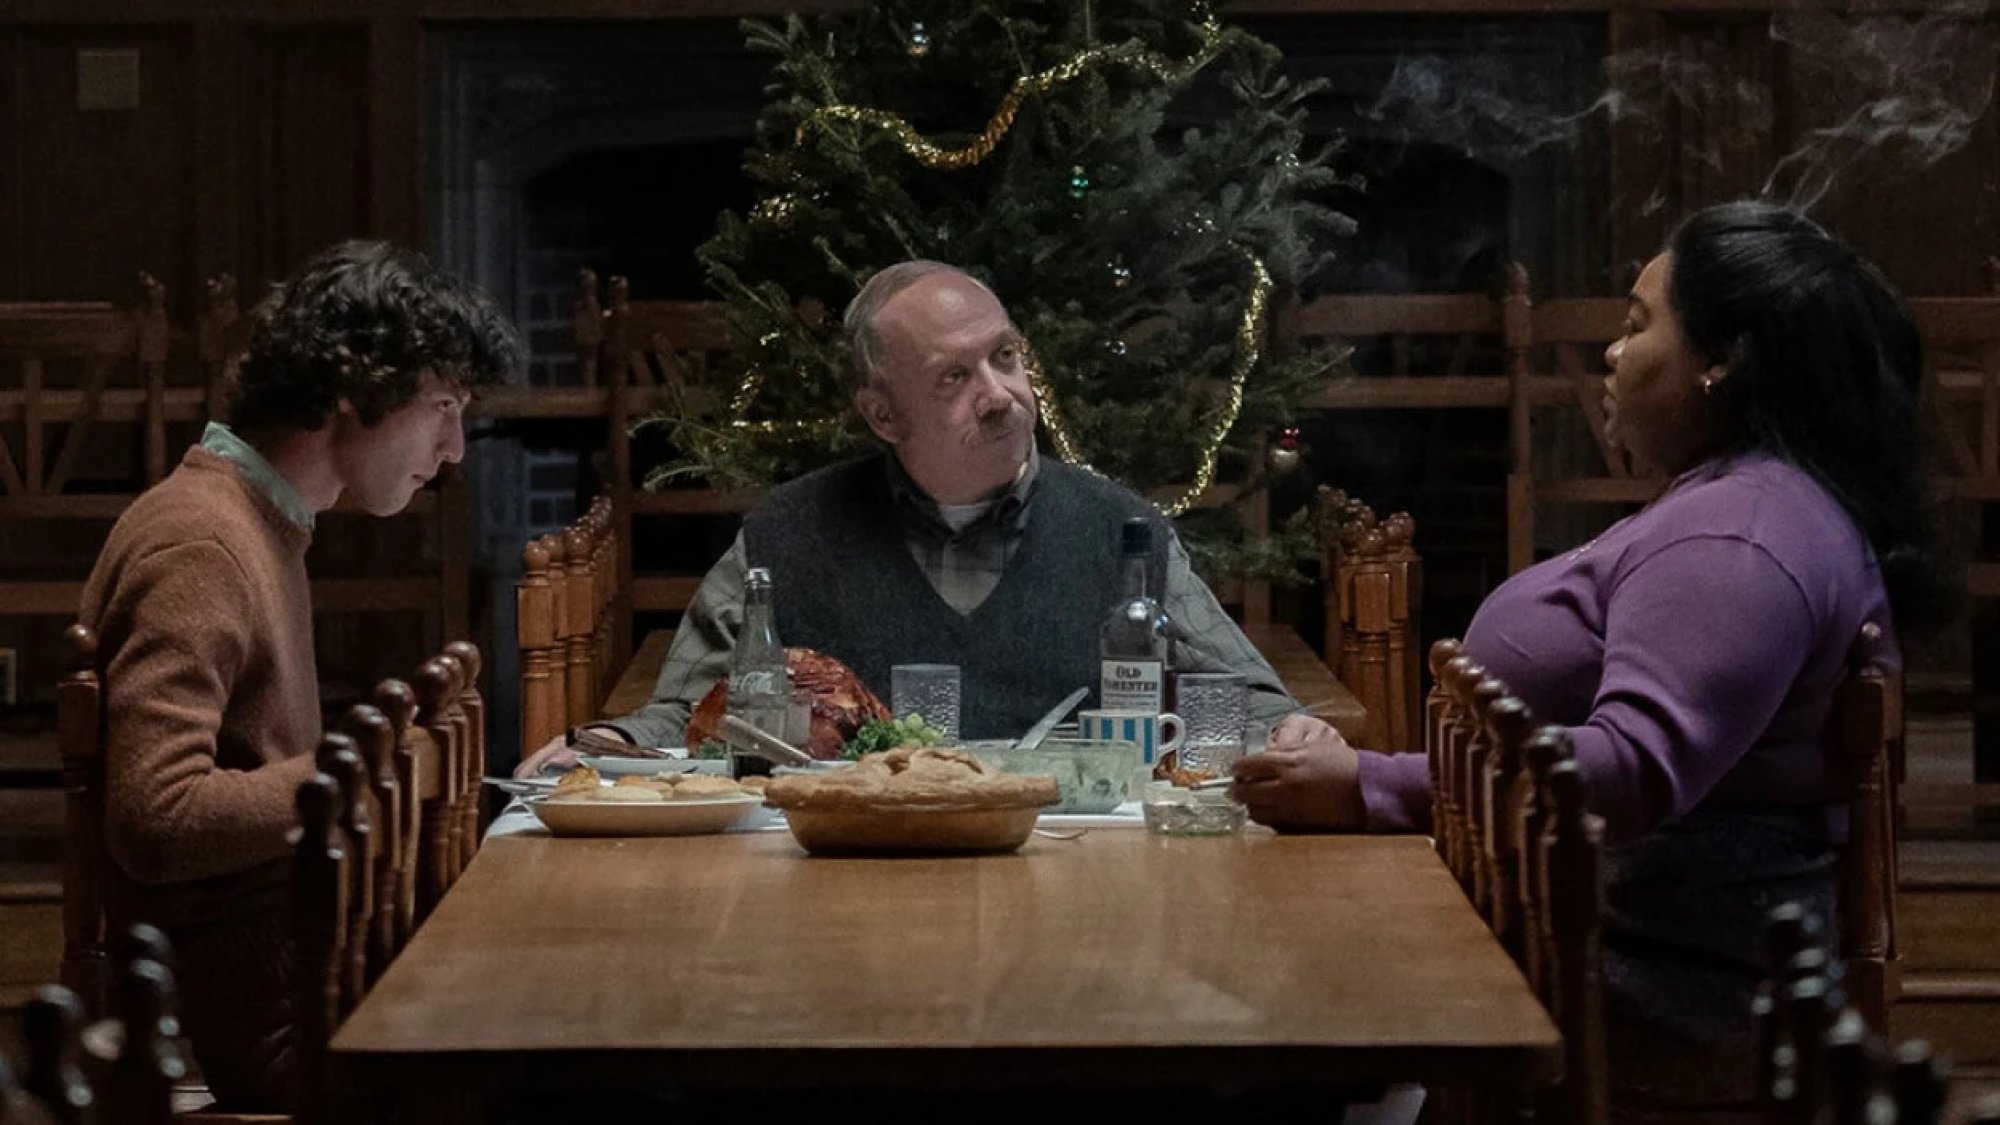 Trois personnes dînent à une longue table devant un sapin de Noël.